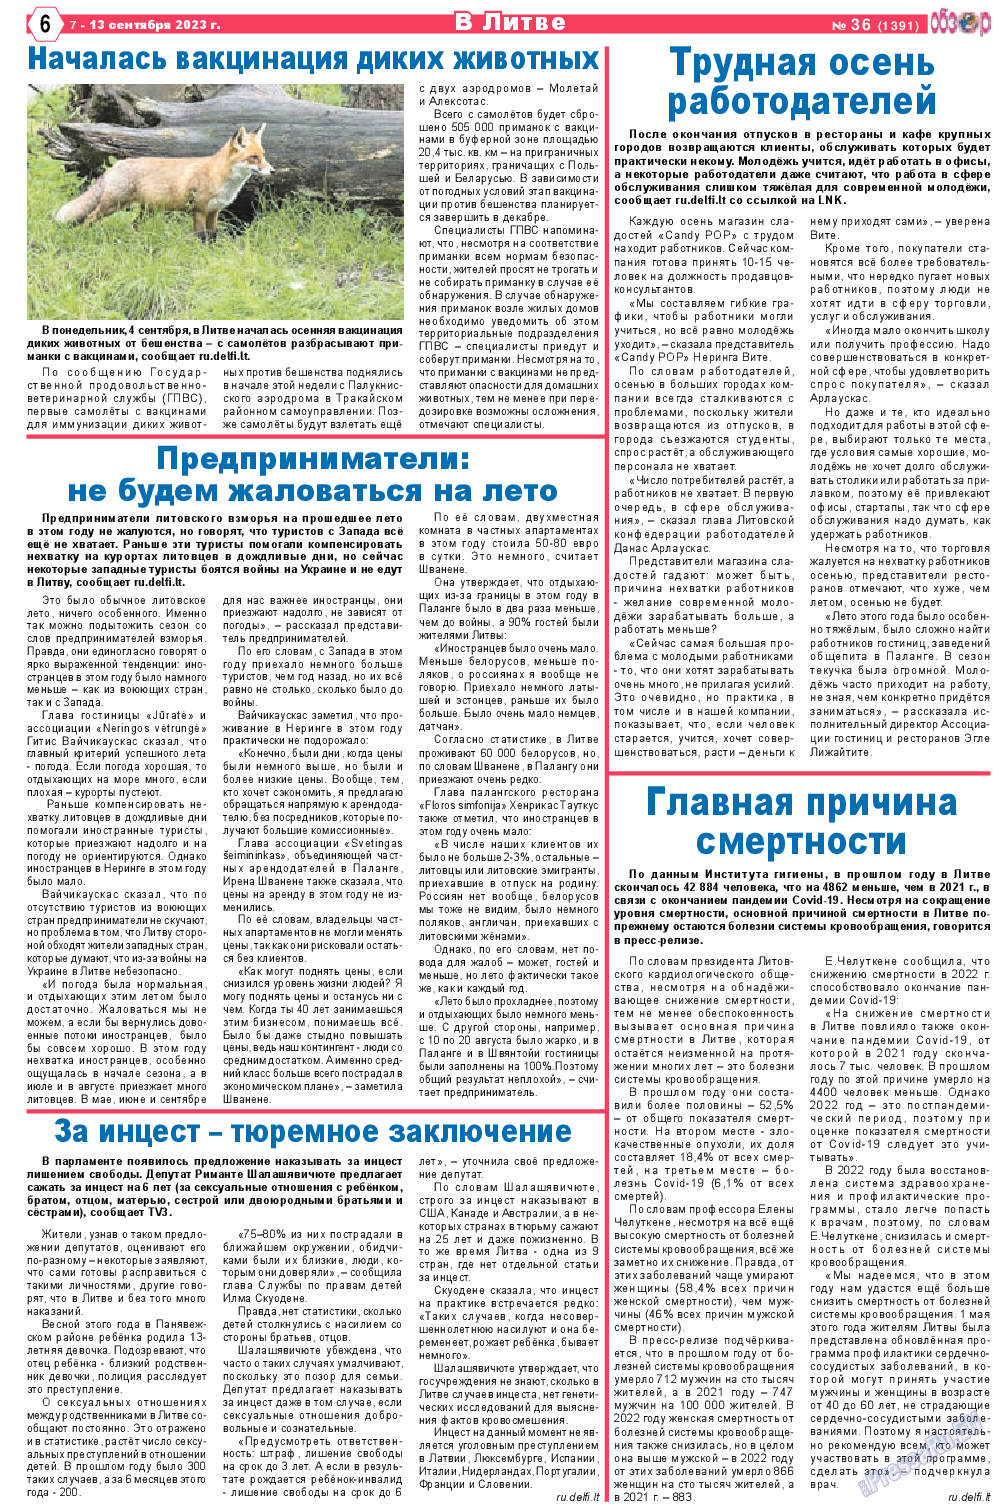 Обзор, газета. 2023 №36 стр.6